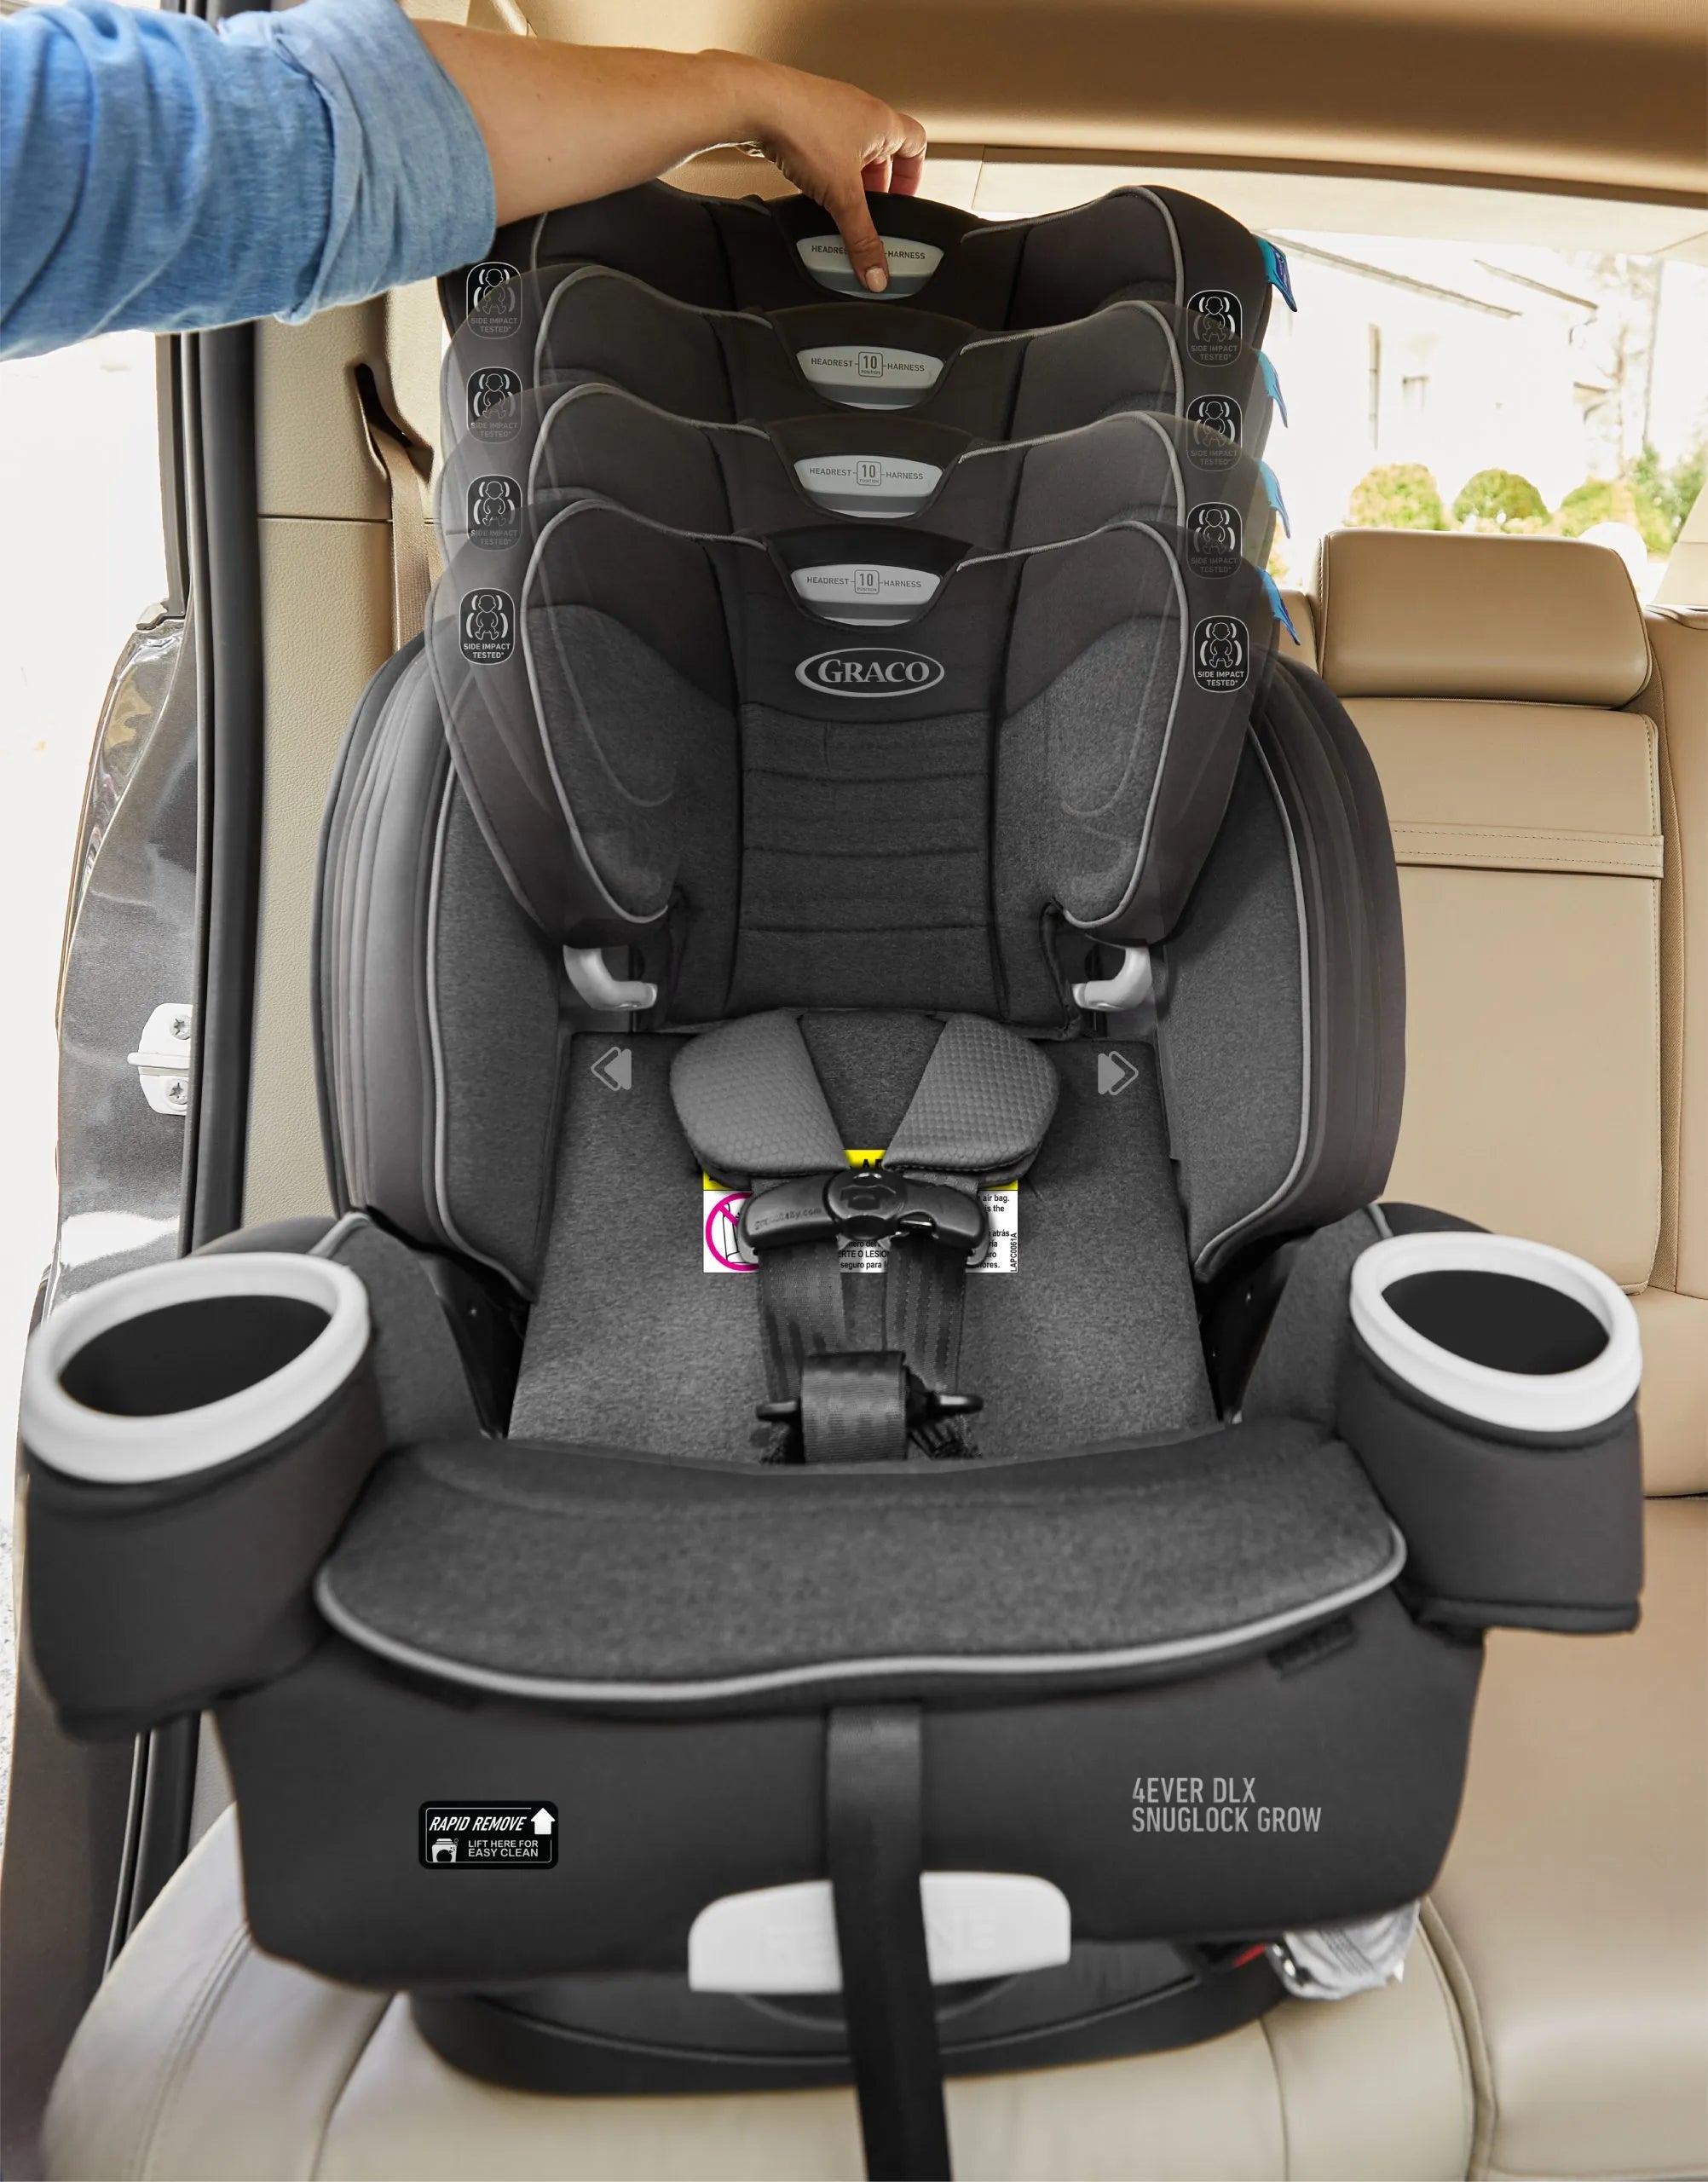 Car Seat Graco 4ever DLX SnugLock® Grow - Maison